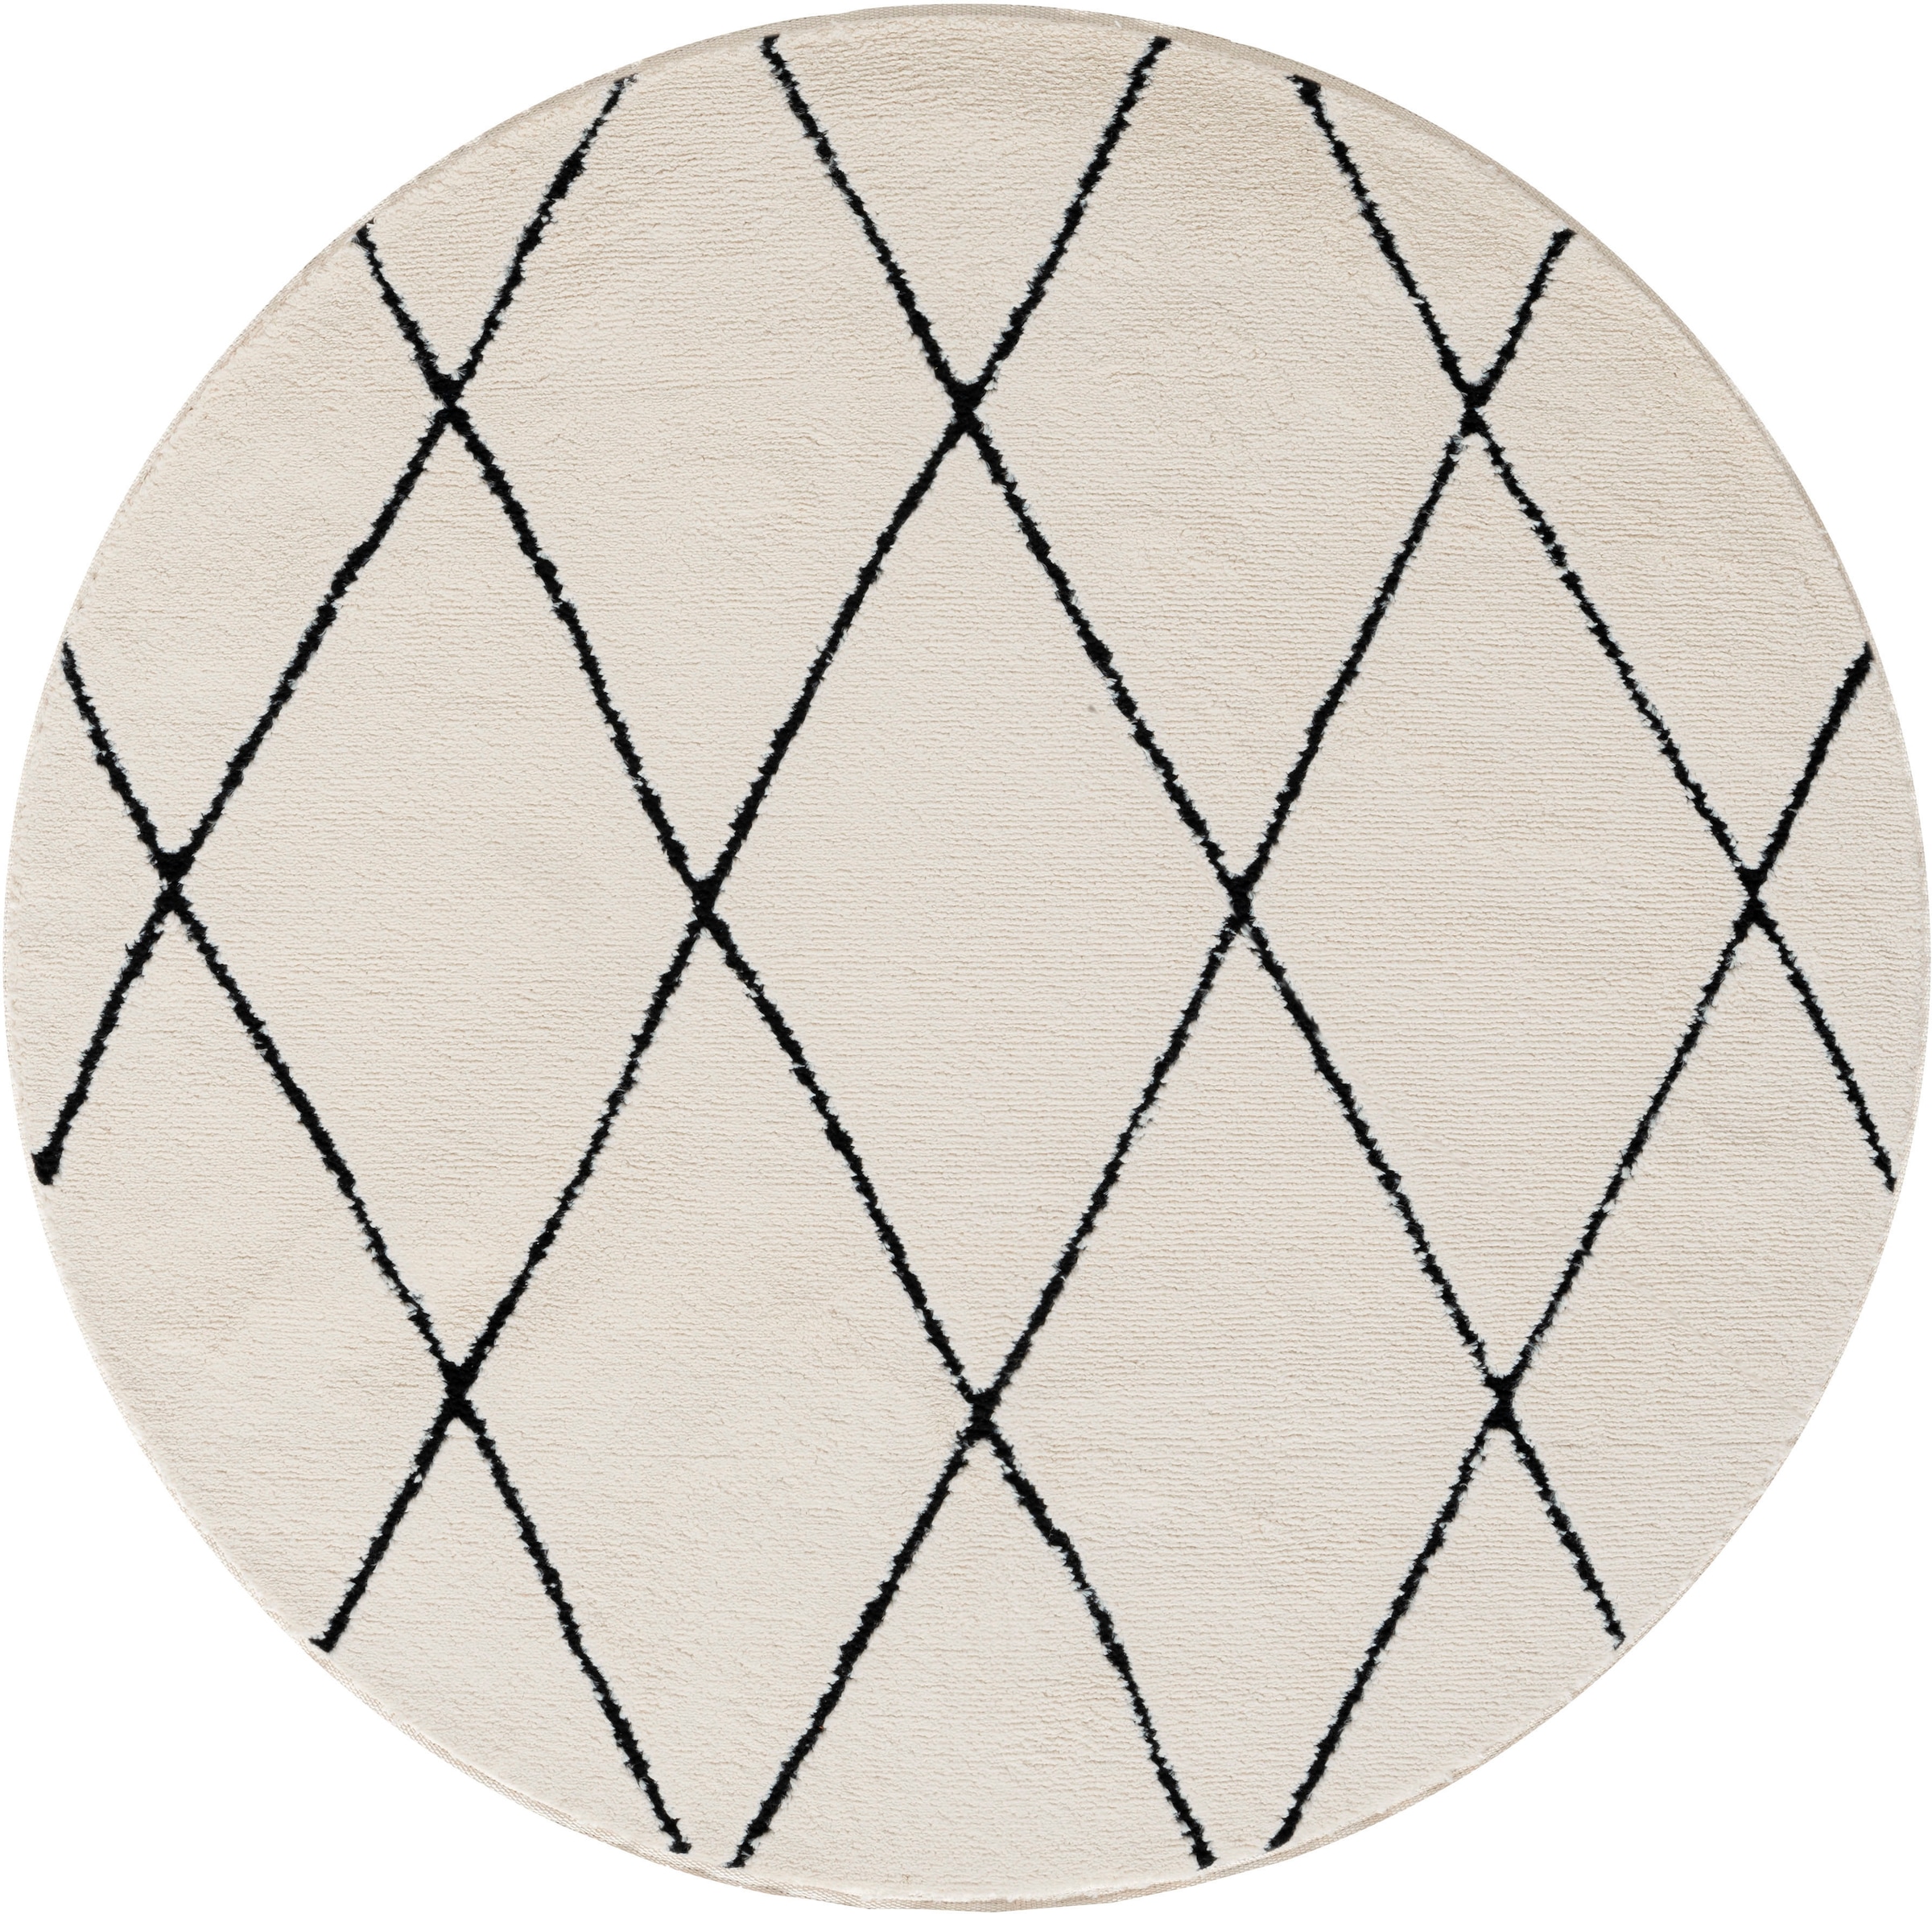 Myflair Möbel & Accessoires Hochflor-Teppich »Moroccan Diamond«, rund, modern, marokkanisches Design, Rauten Muster, weich durch Hochflor